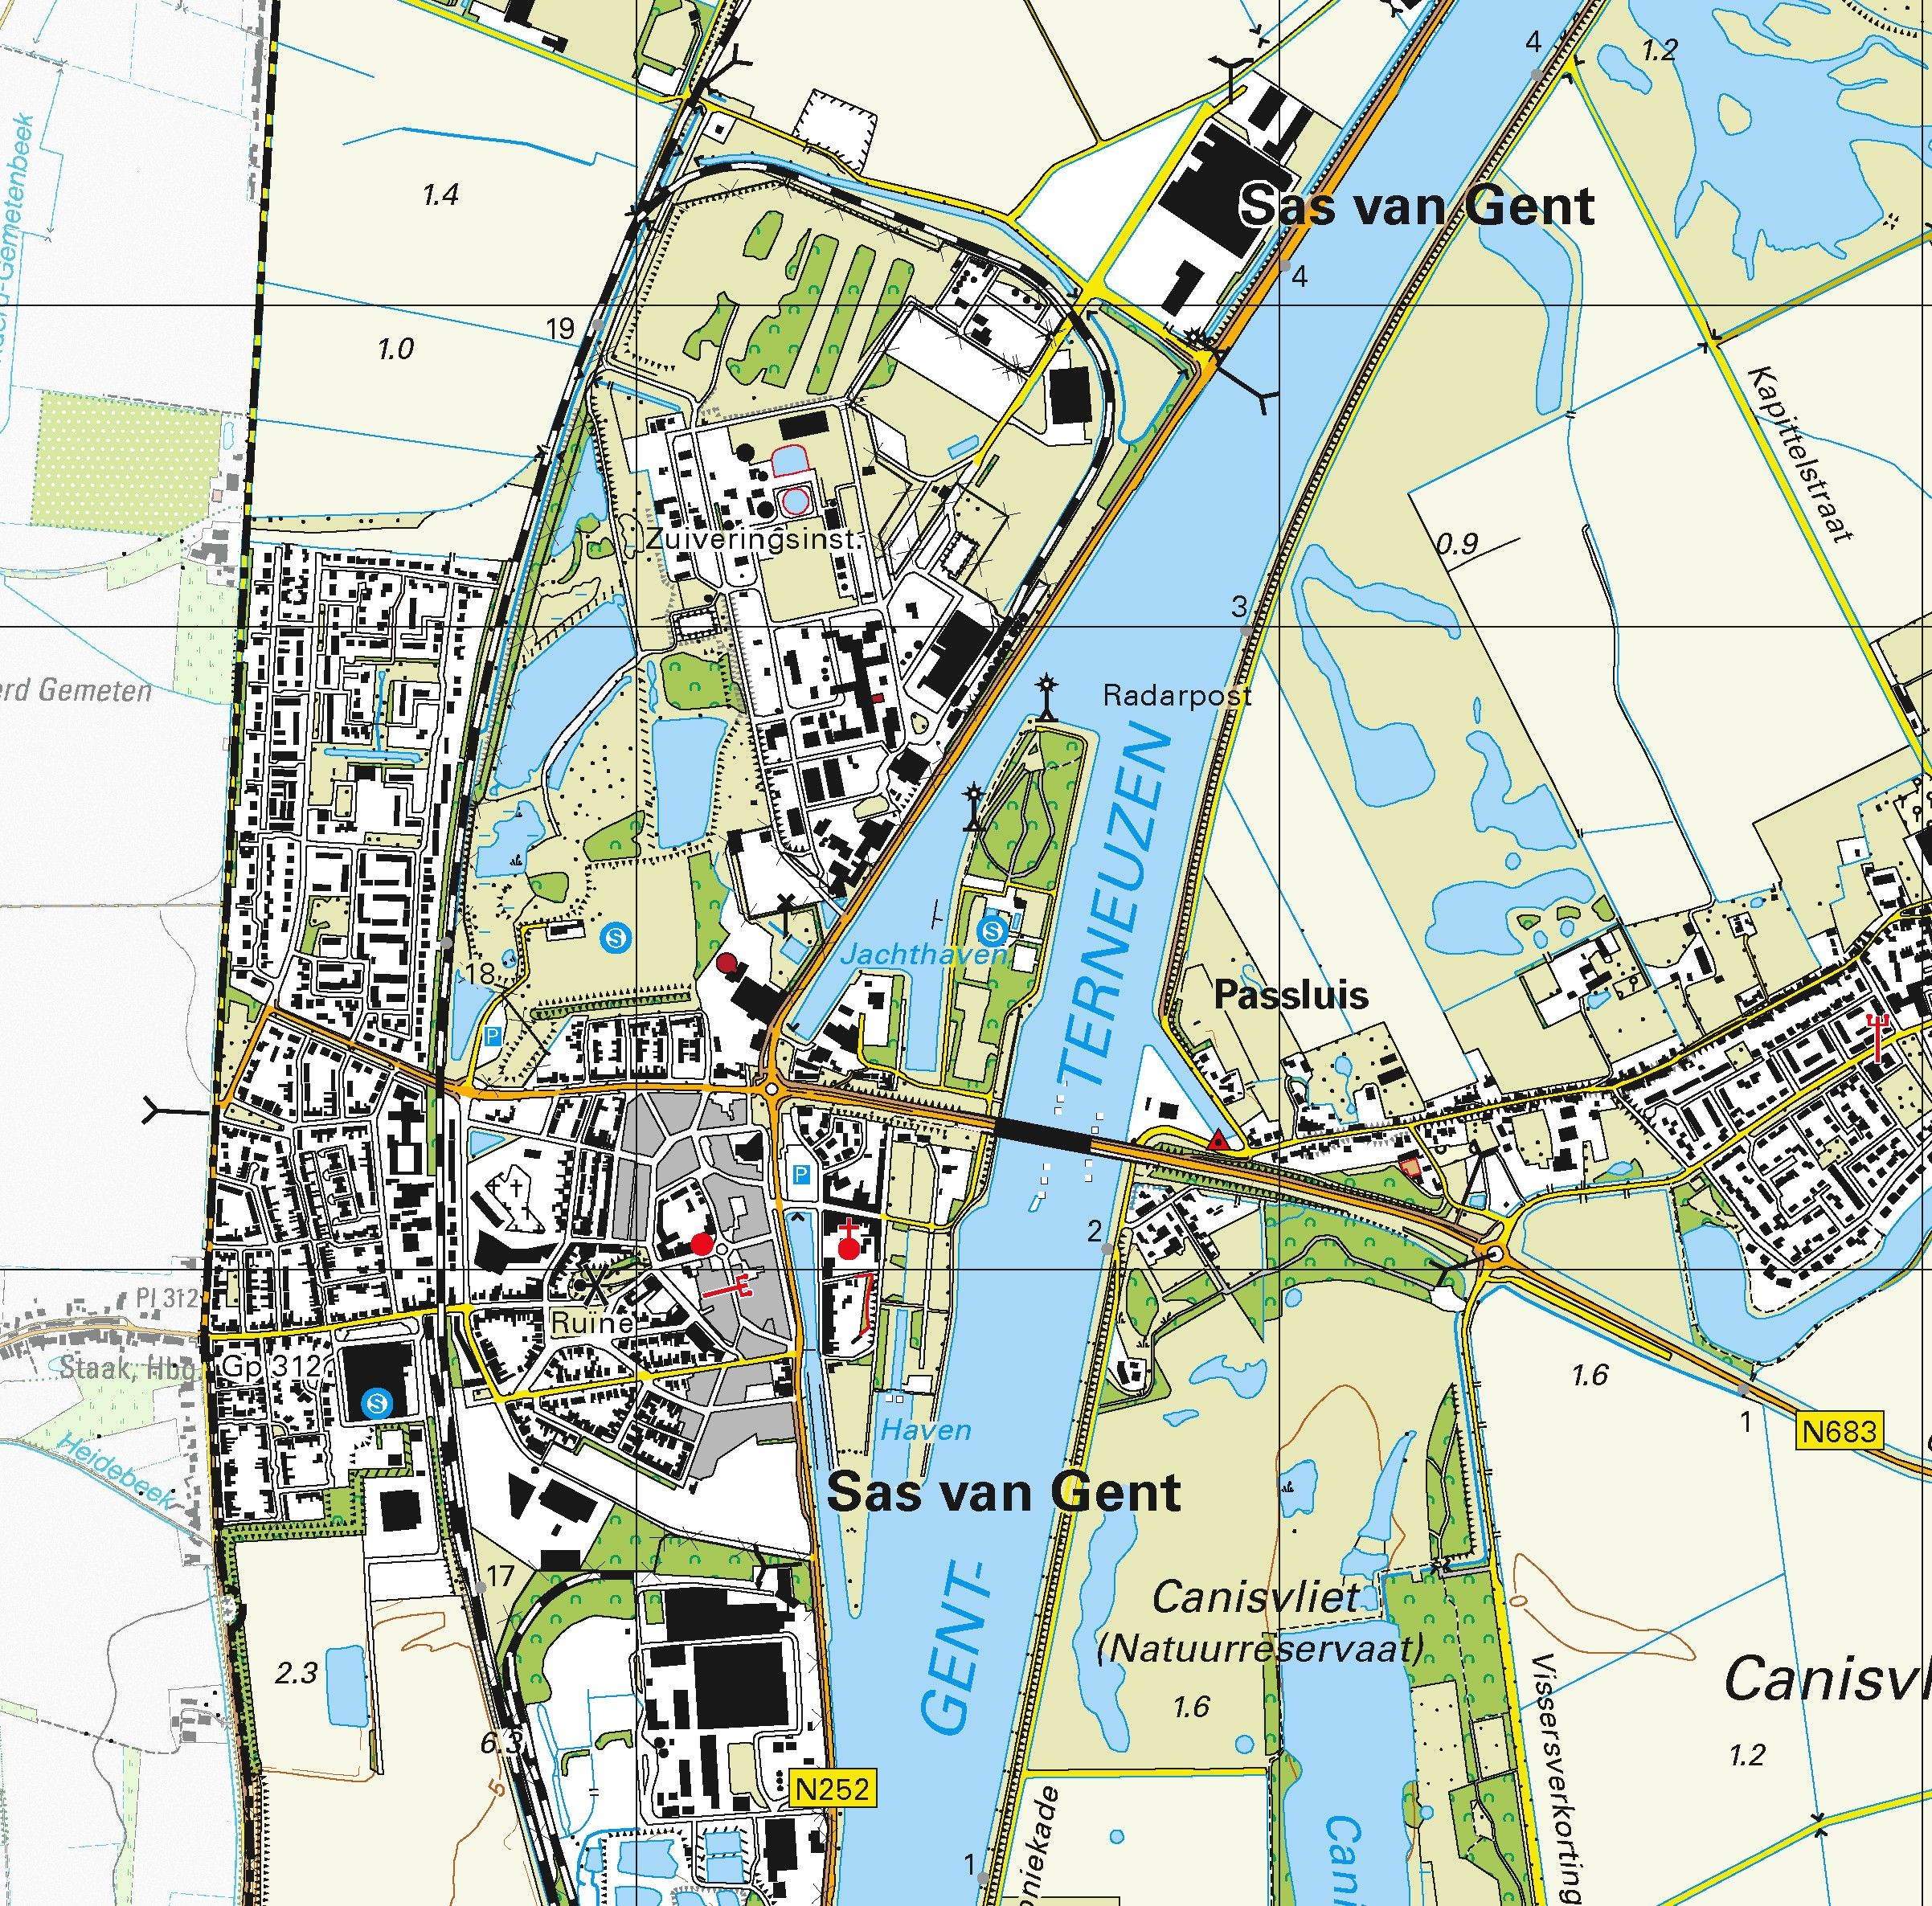 Topografische kaart schaal 1:25.000 (Terneuzen, Axel, Sas van Gent, Westdorpe, Koewacht, Heikant)